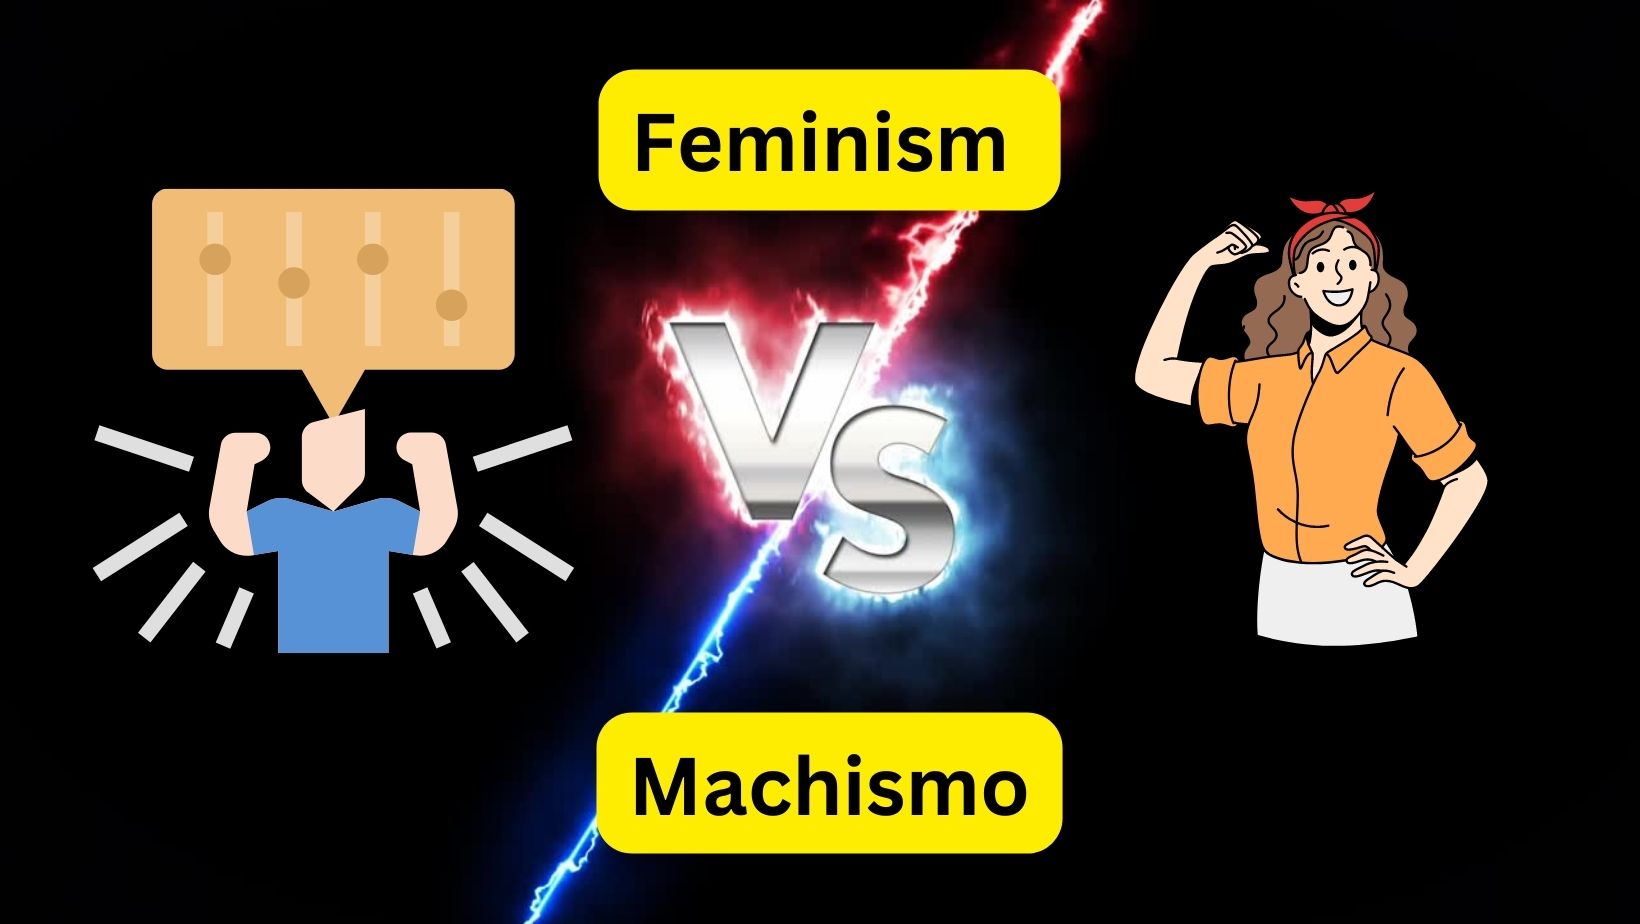 Feminism and Machismo